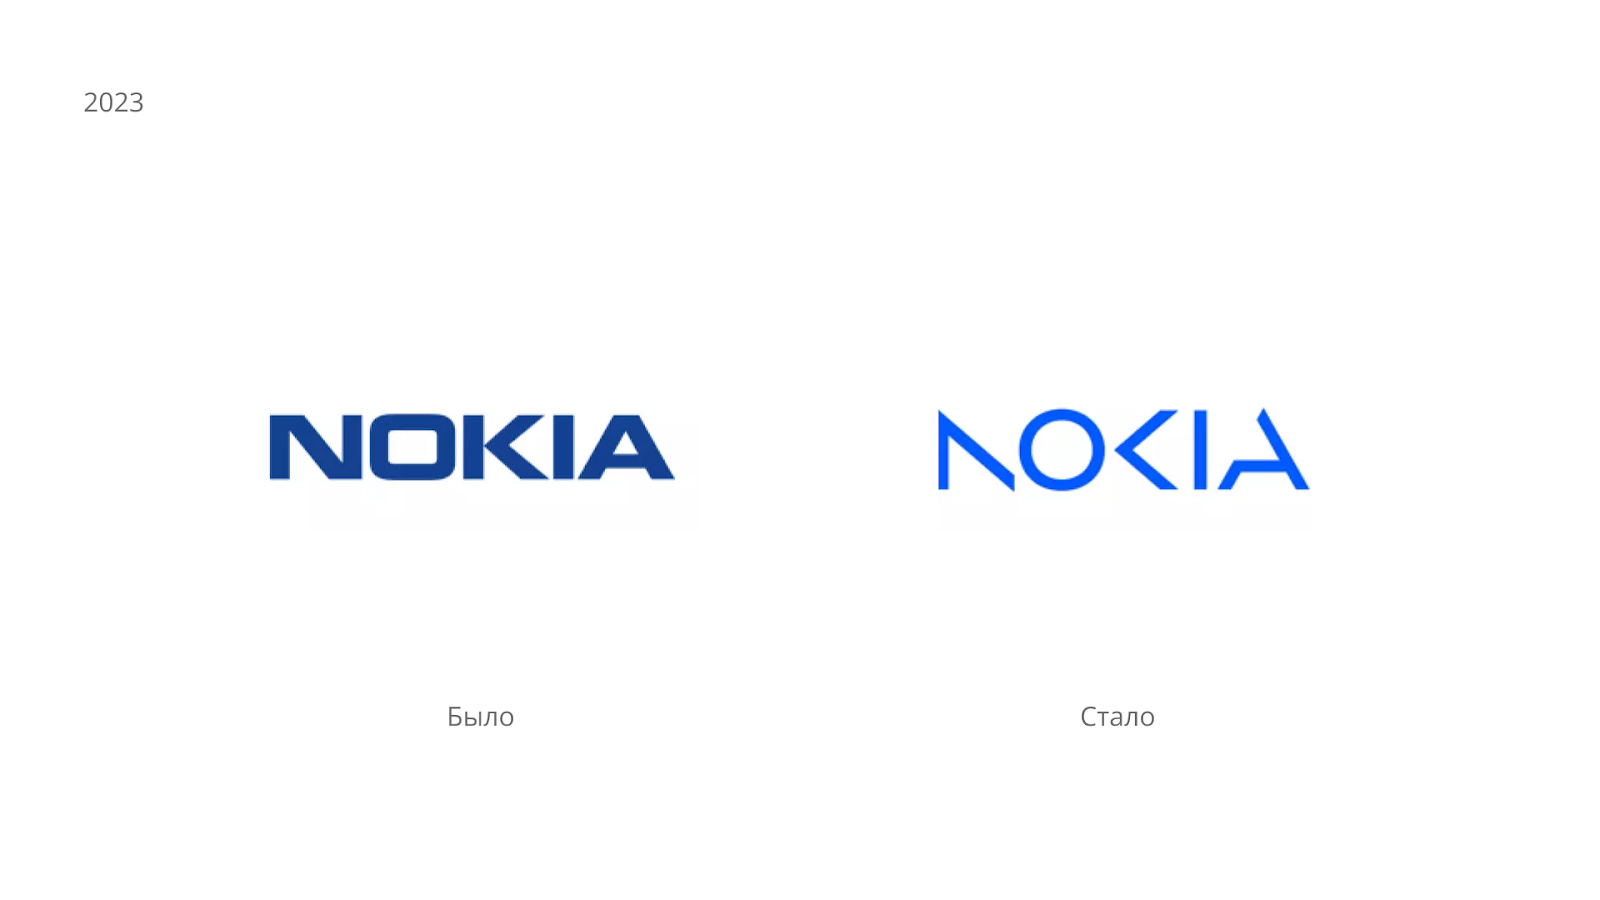 Гендиректор Nokia Пекка Лундмарк сообщил, что новый бренд будет сосредоточен на сетях и промышленной цифровизации. Он знаменует обновление стратегии компании, в частности, развитие сетей нового поколения мобильной связи 6G. Что и отражает новый логотип.